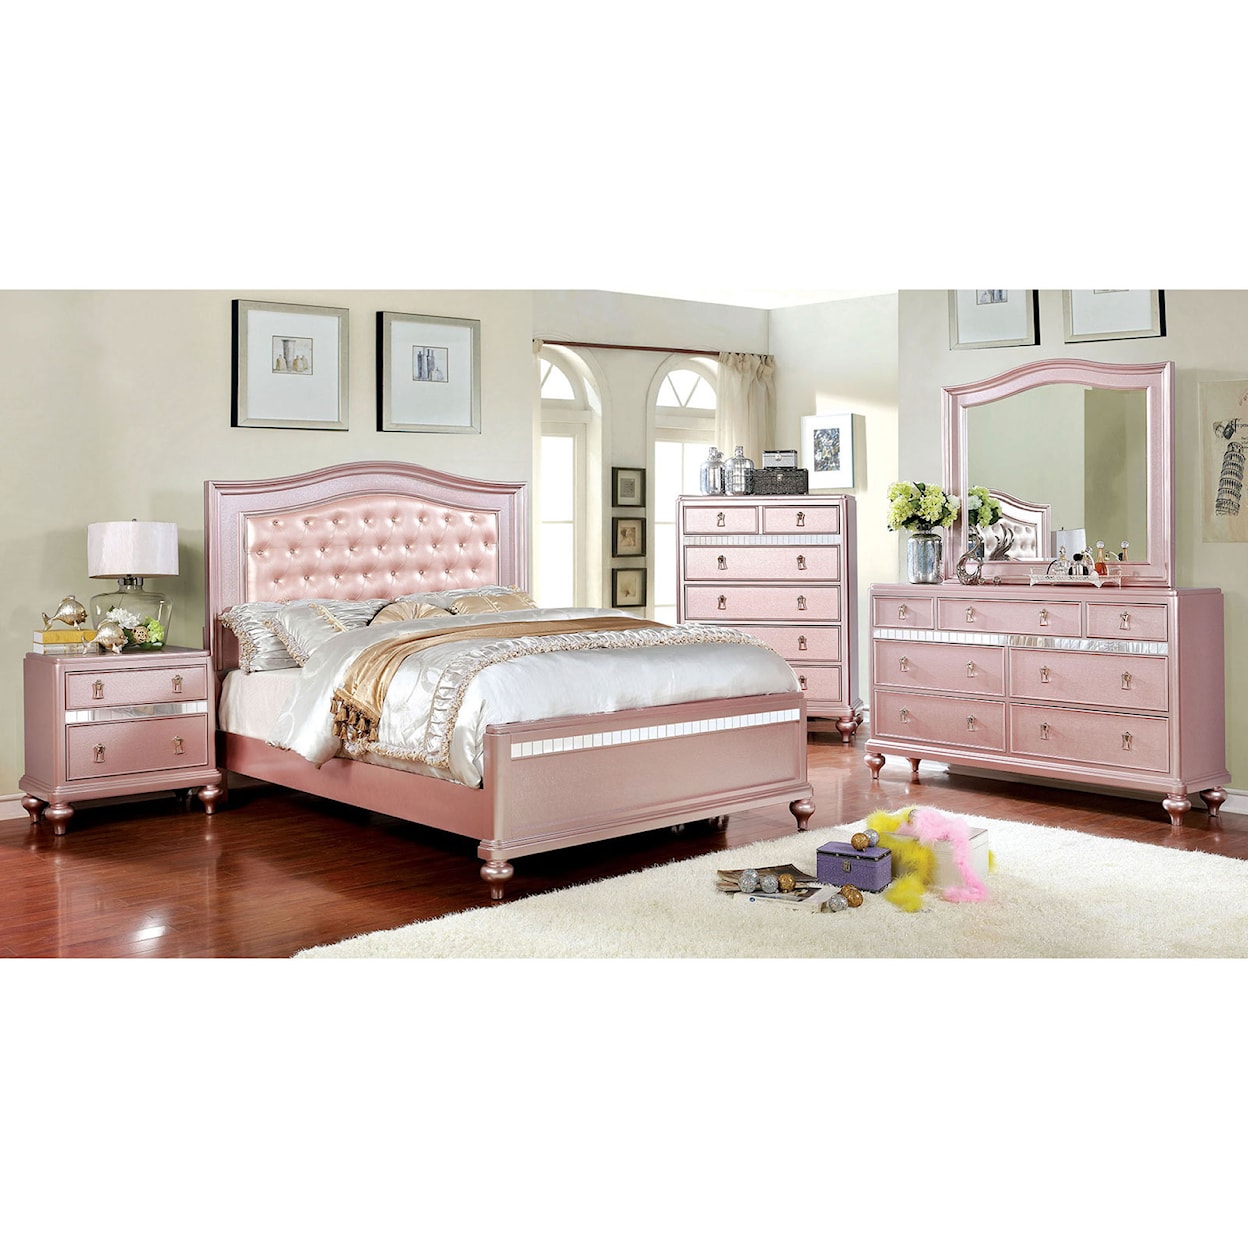 Furniture of America Ariston Queen Bedroom Set